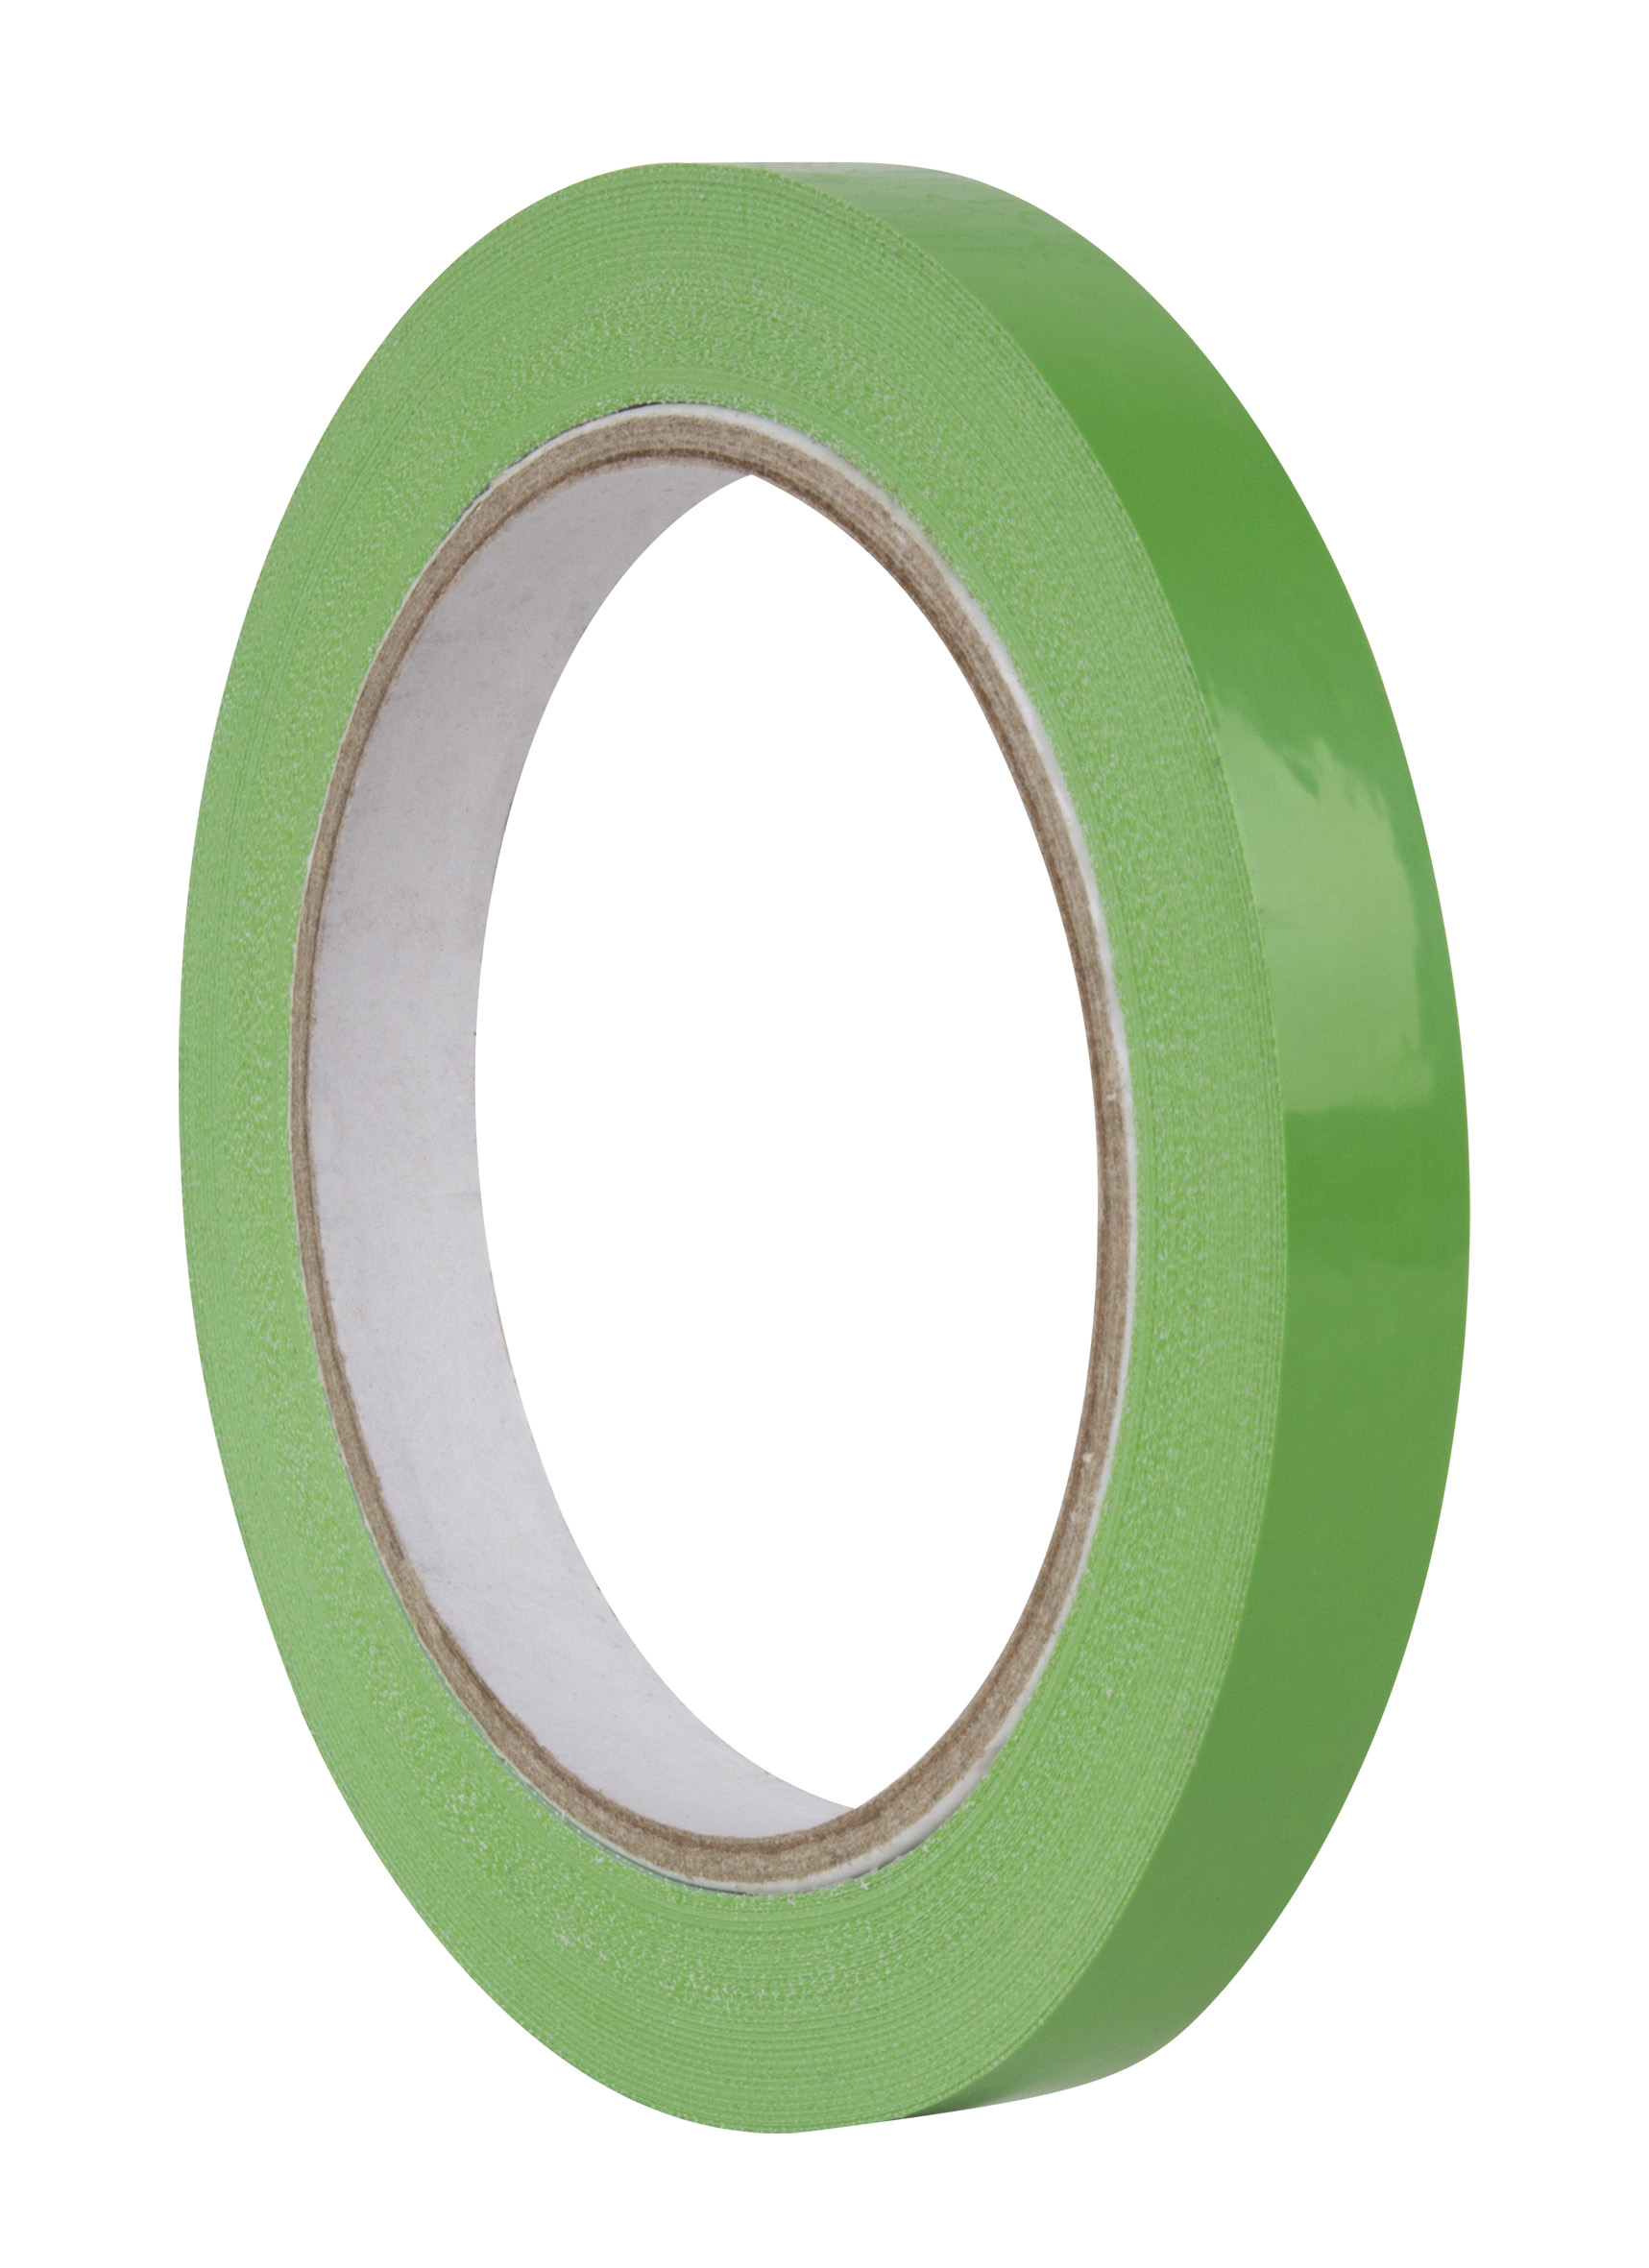 Apli Green Ruban adhésif 12 mm x 66 m - Résistant à la déchirure - Facile à couper - Adhésif vert de haute qualité